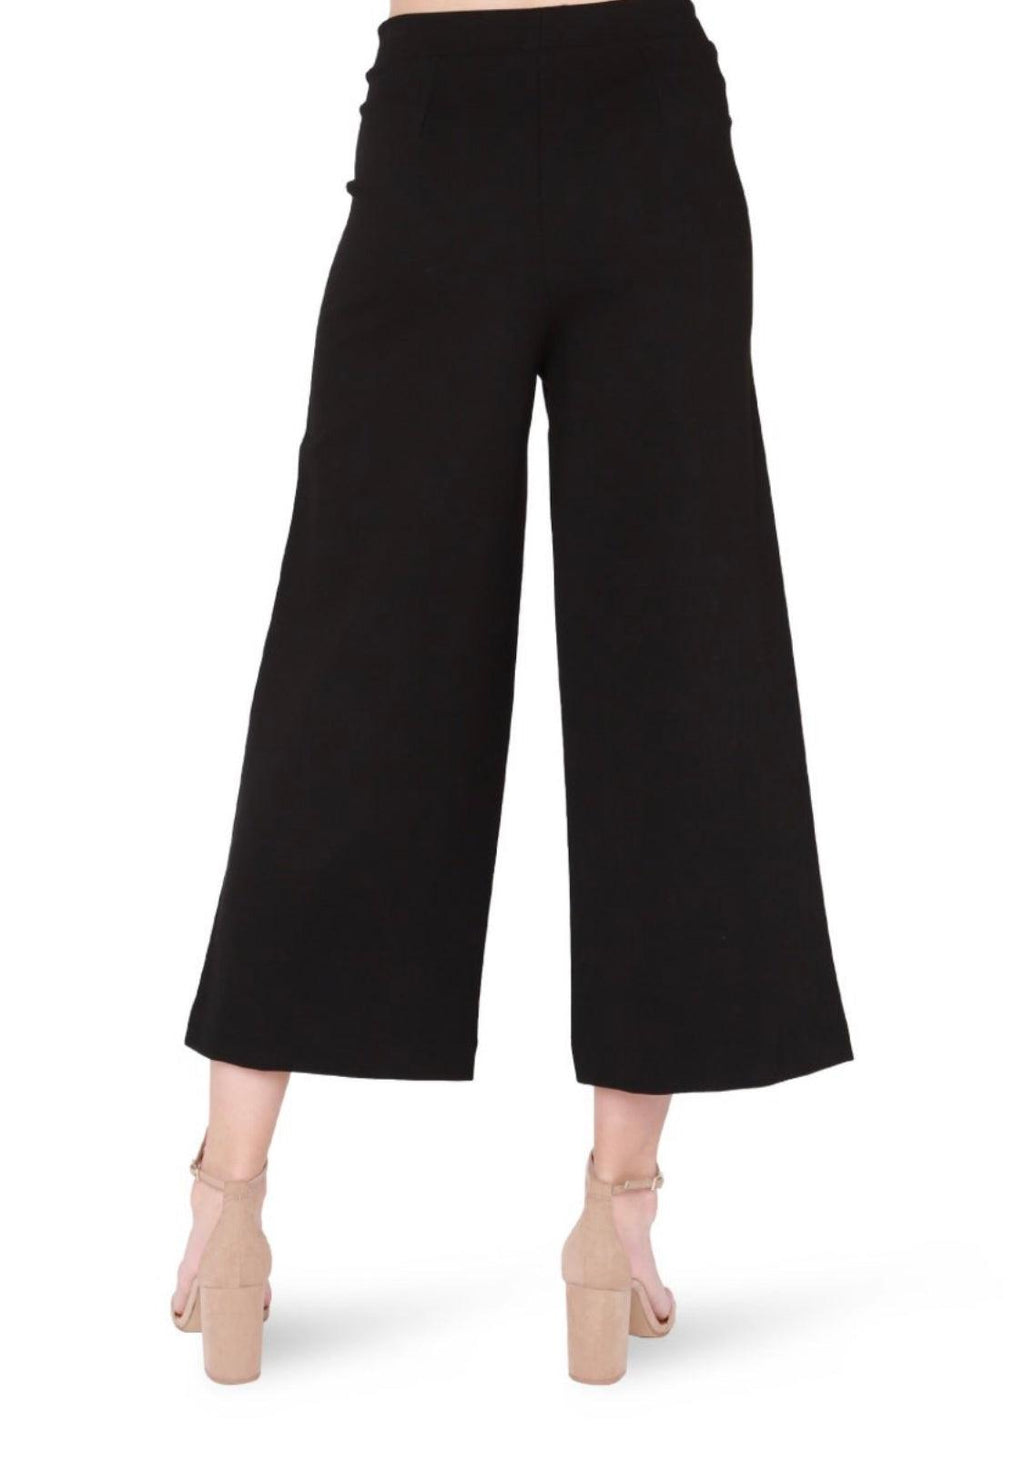 Wide Leg Black Ponte Cropped Pants-160 Bottoms-Black Pants, Elastic Waist Wide Leg Pants, Max Retail, Ponte Pants, sale, Wide Leg Pants-[option4]-[option5]-[option6]-Womens-USA-Clothing-Boutique-Shop-Online-Clothes Minded